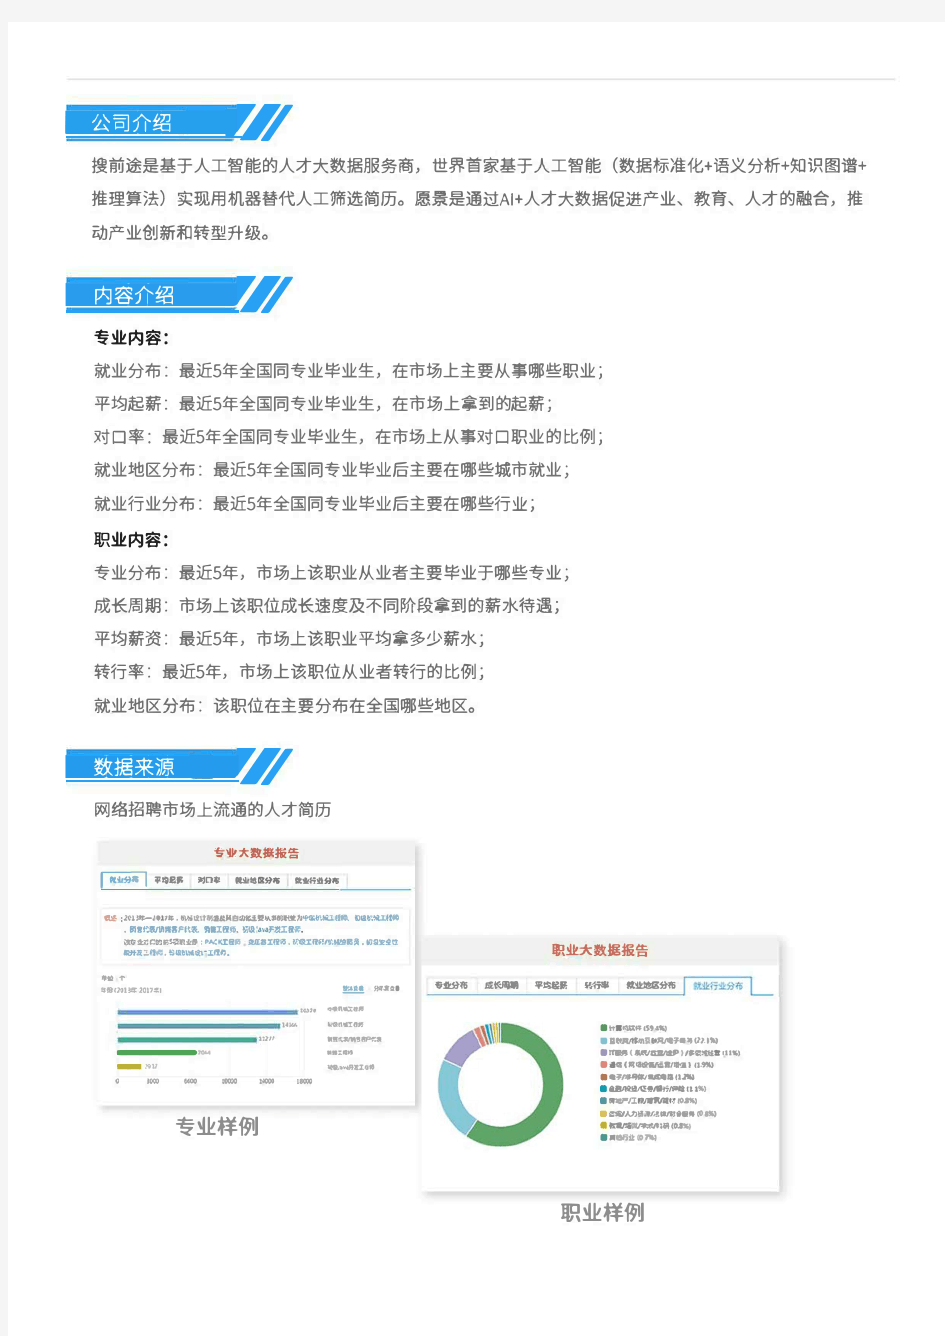 2013-2017年北京工业大学计算机类专业毕业生就业大数据报告